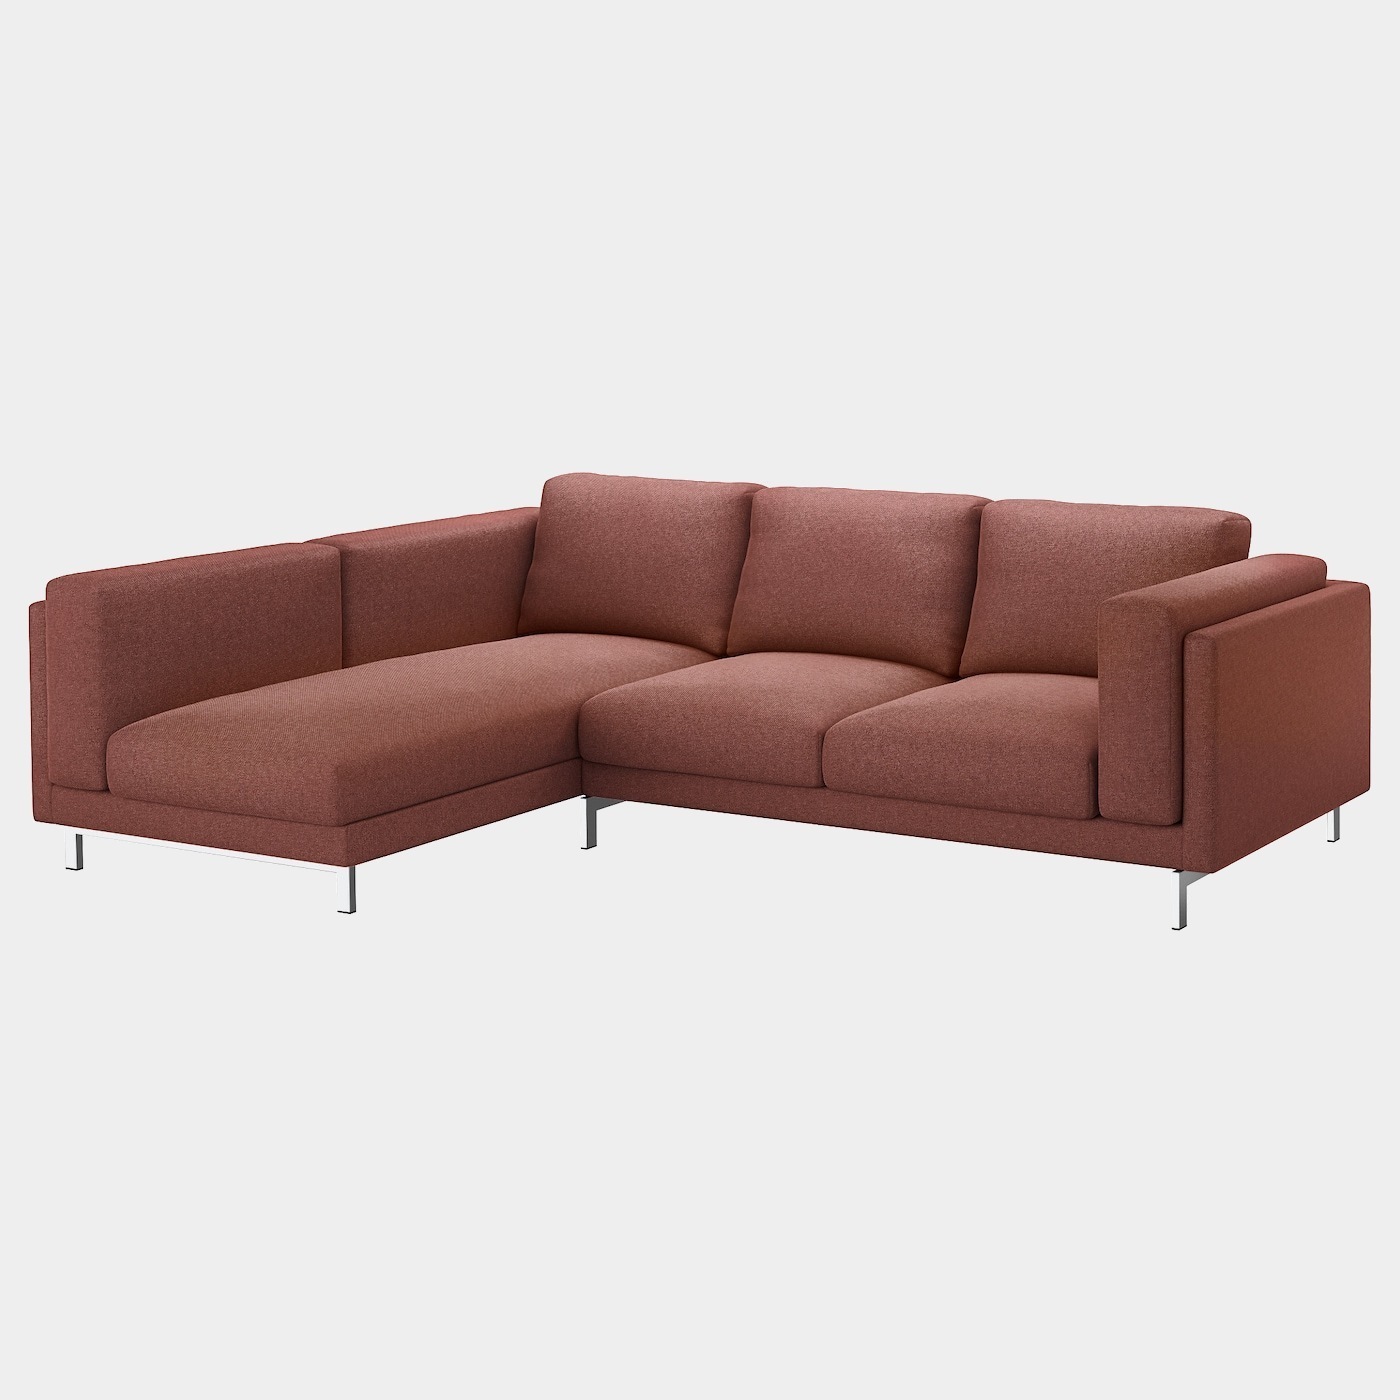 NOCKEBY Bezug 3er-Sofa  - extra Bezüge - Möbel Ideen für dein Zuhause von Home Trends. Möbel Trends von Social Media Influencer für dein Skandi Zuhause.